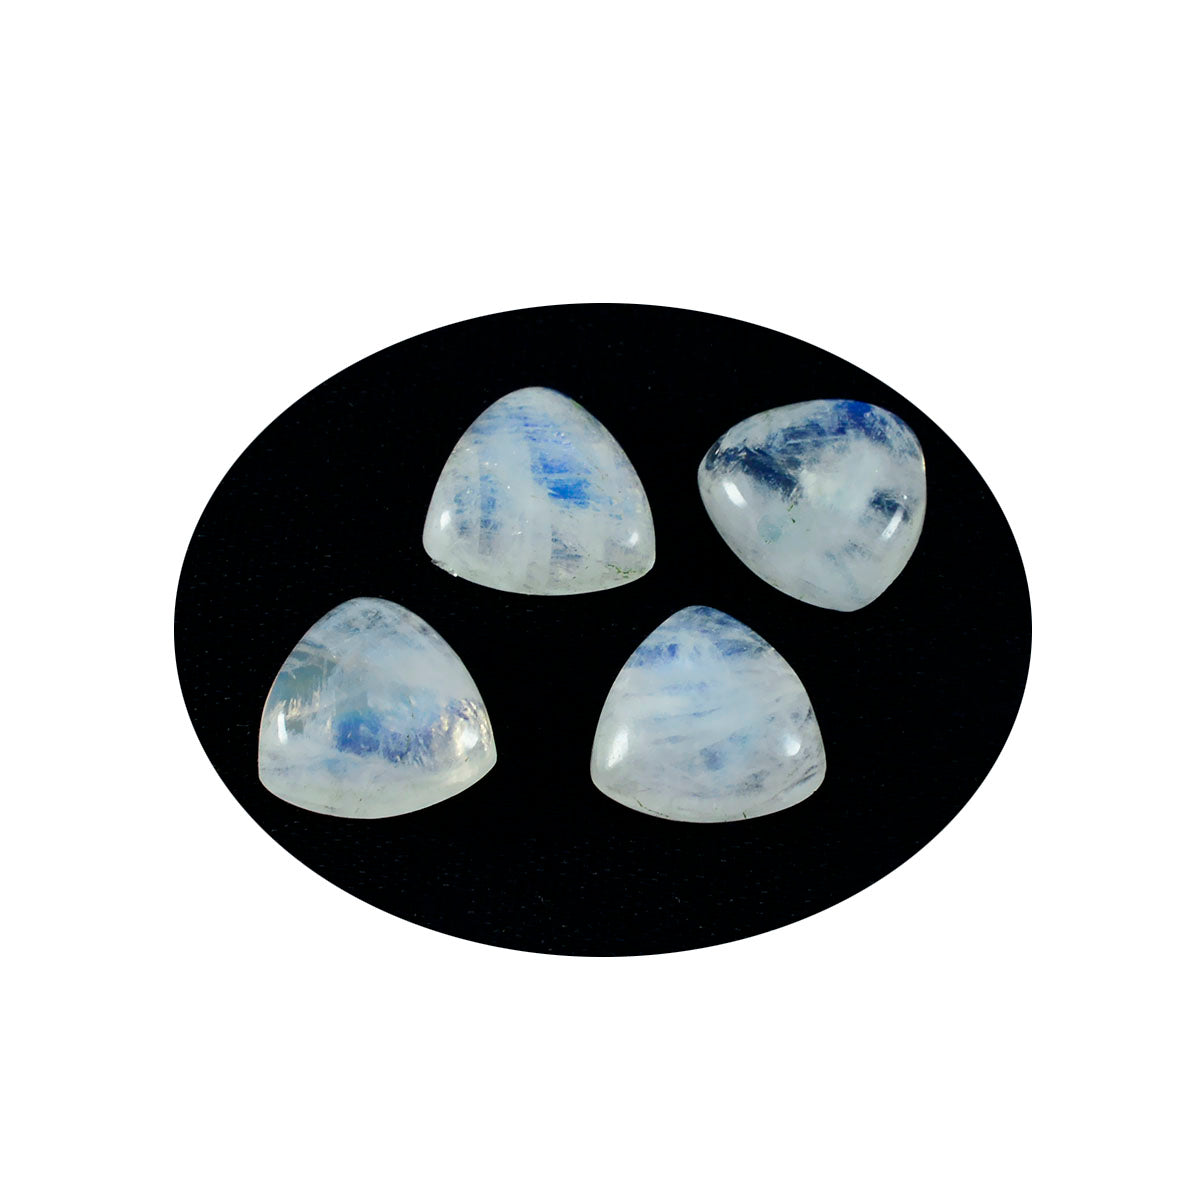 riyogems 1 шт. белый радужный лунный камень кабошон 10x10 мм форма триллион качество AAA россыпь драгоценных камней